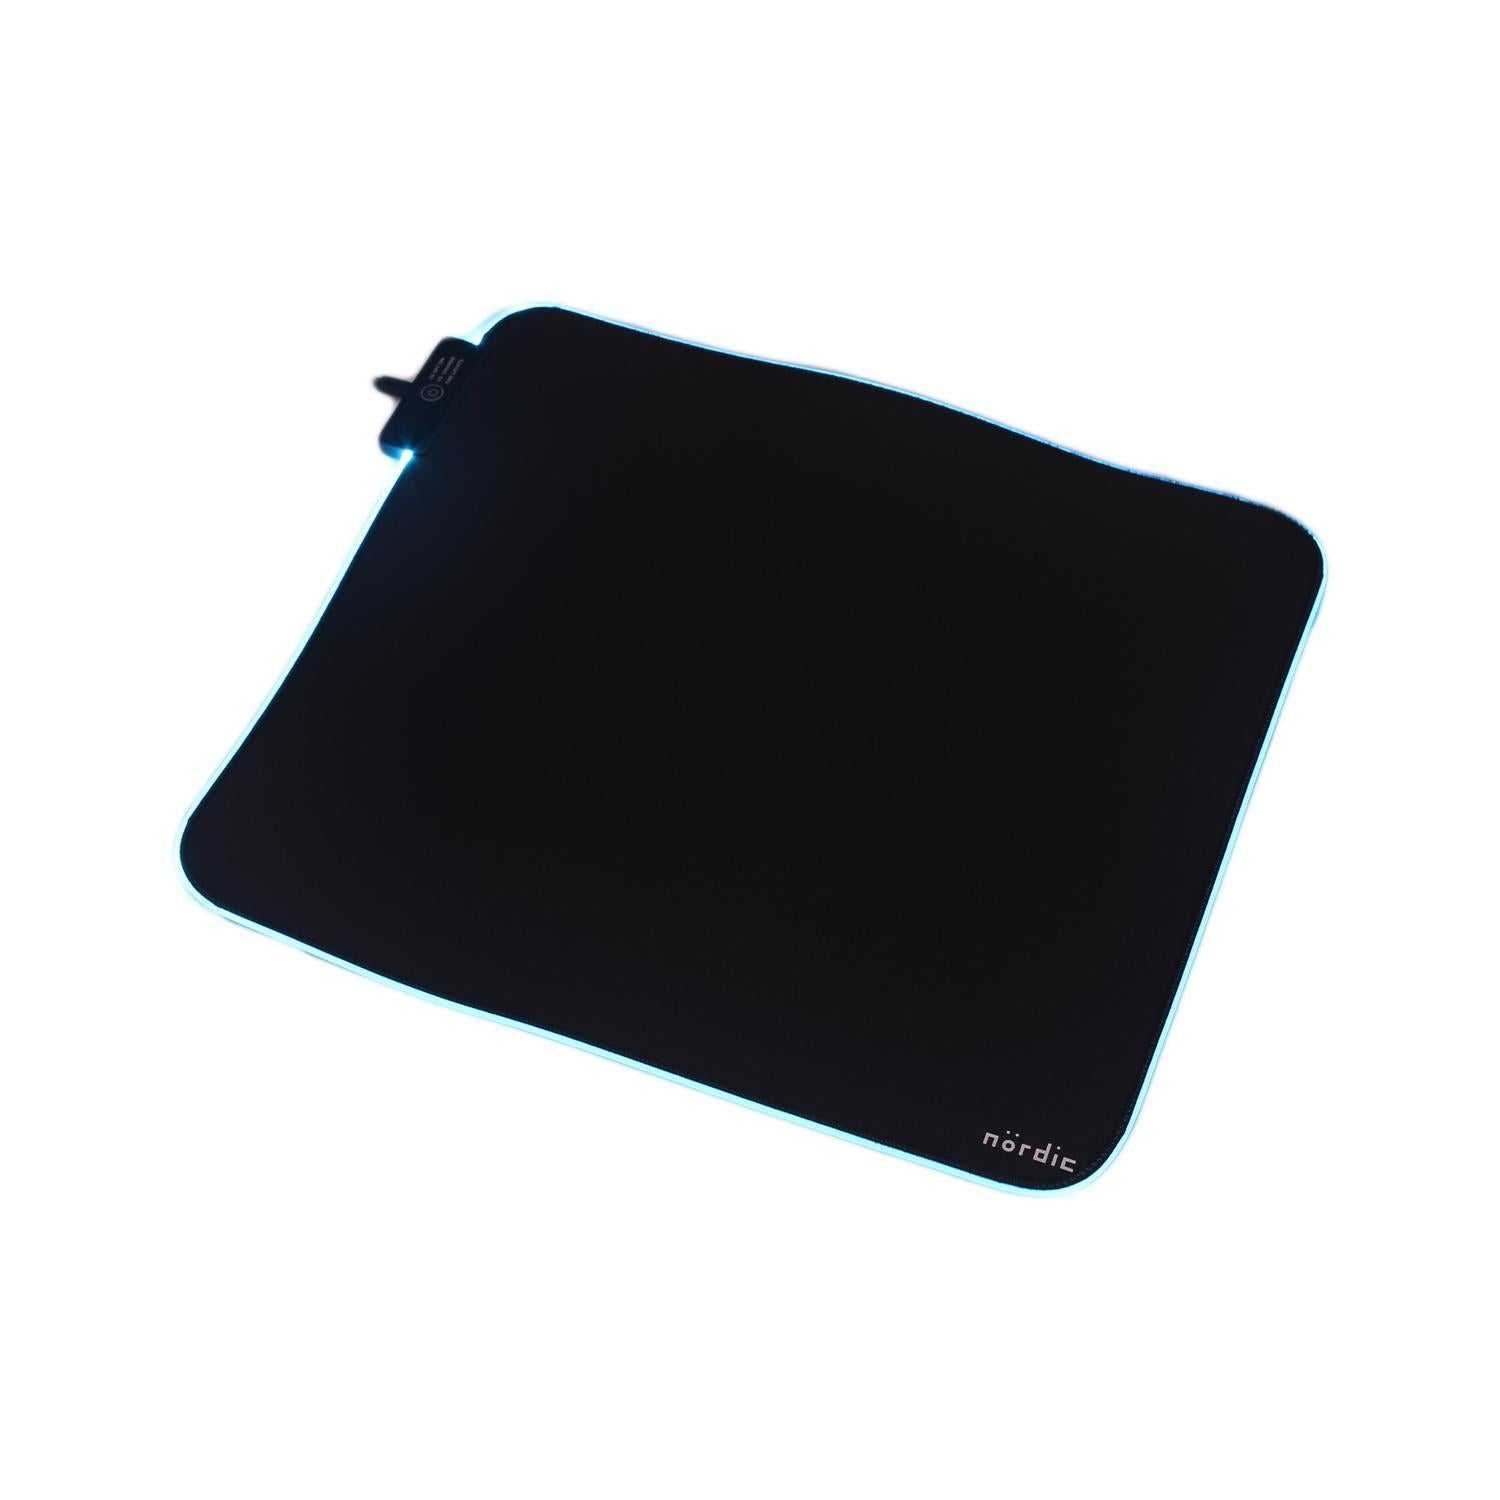 NÖRDIC RGB Gaming Mouse Mat, 320x270x3mm (s), Slipfri naturgummi, Elastan Top, Svart